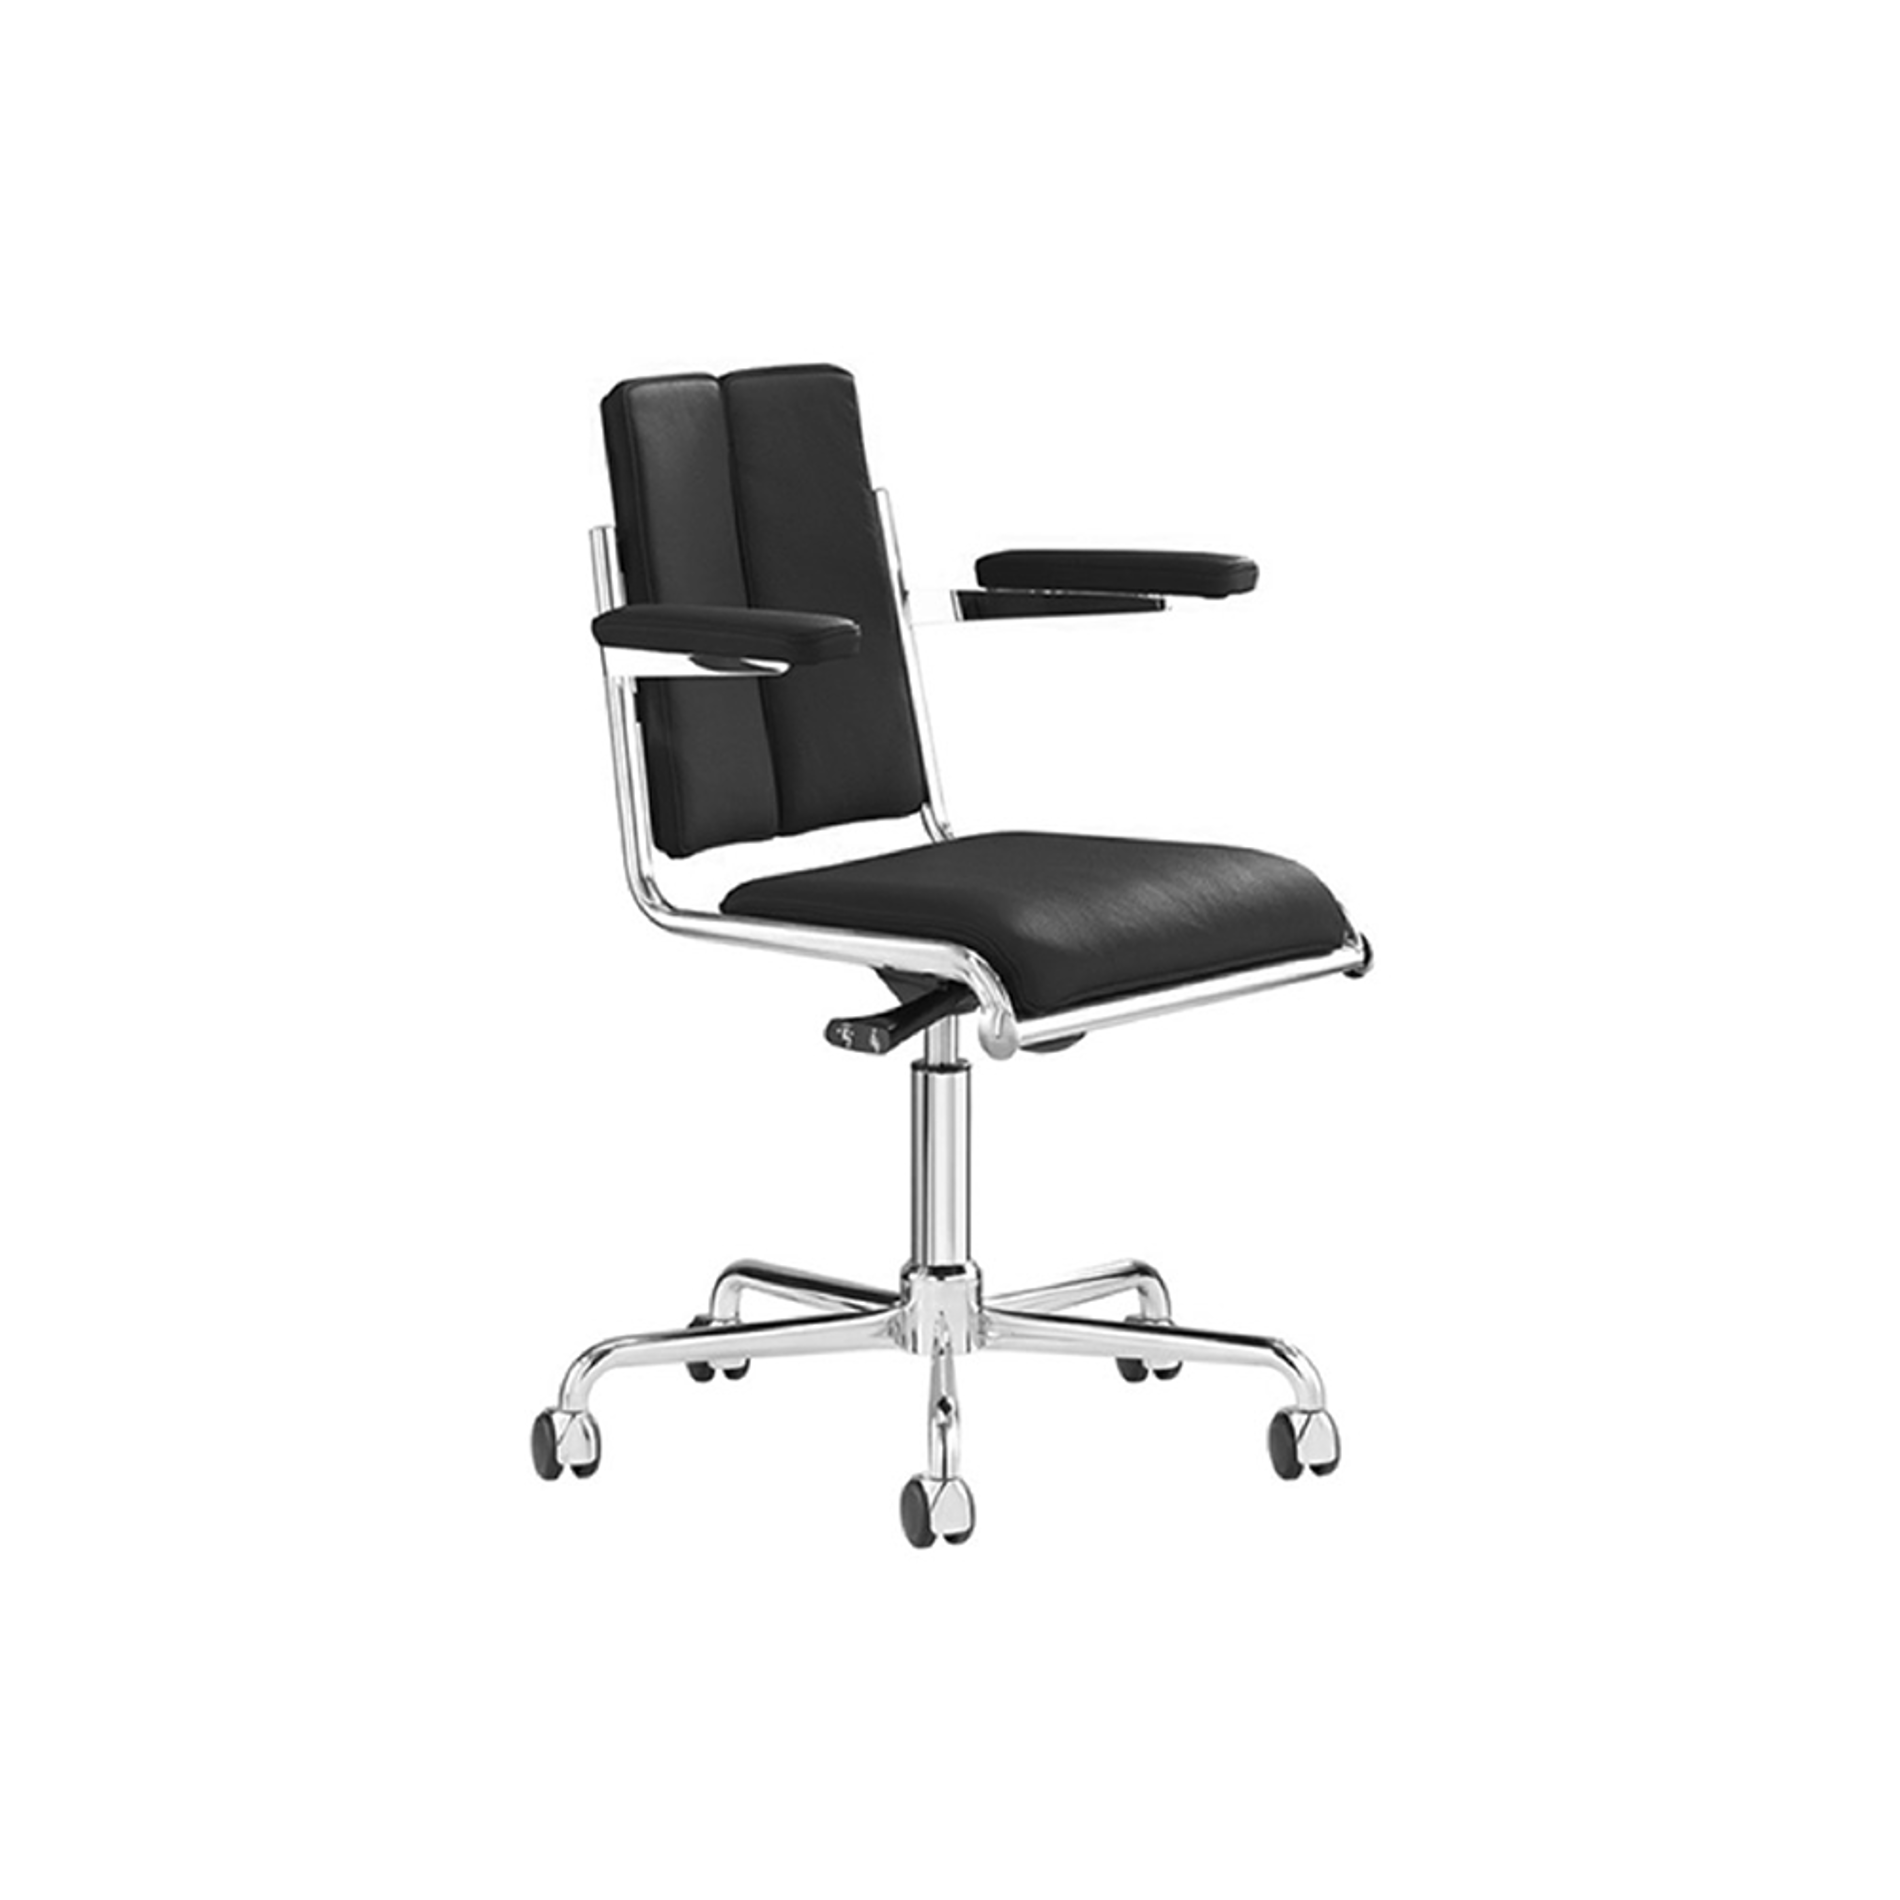 TECTA D12 Desk Chair with Armrest - Black